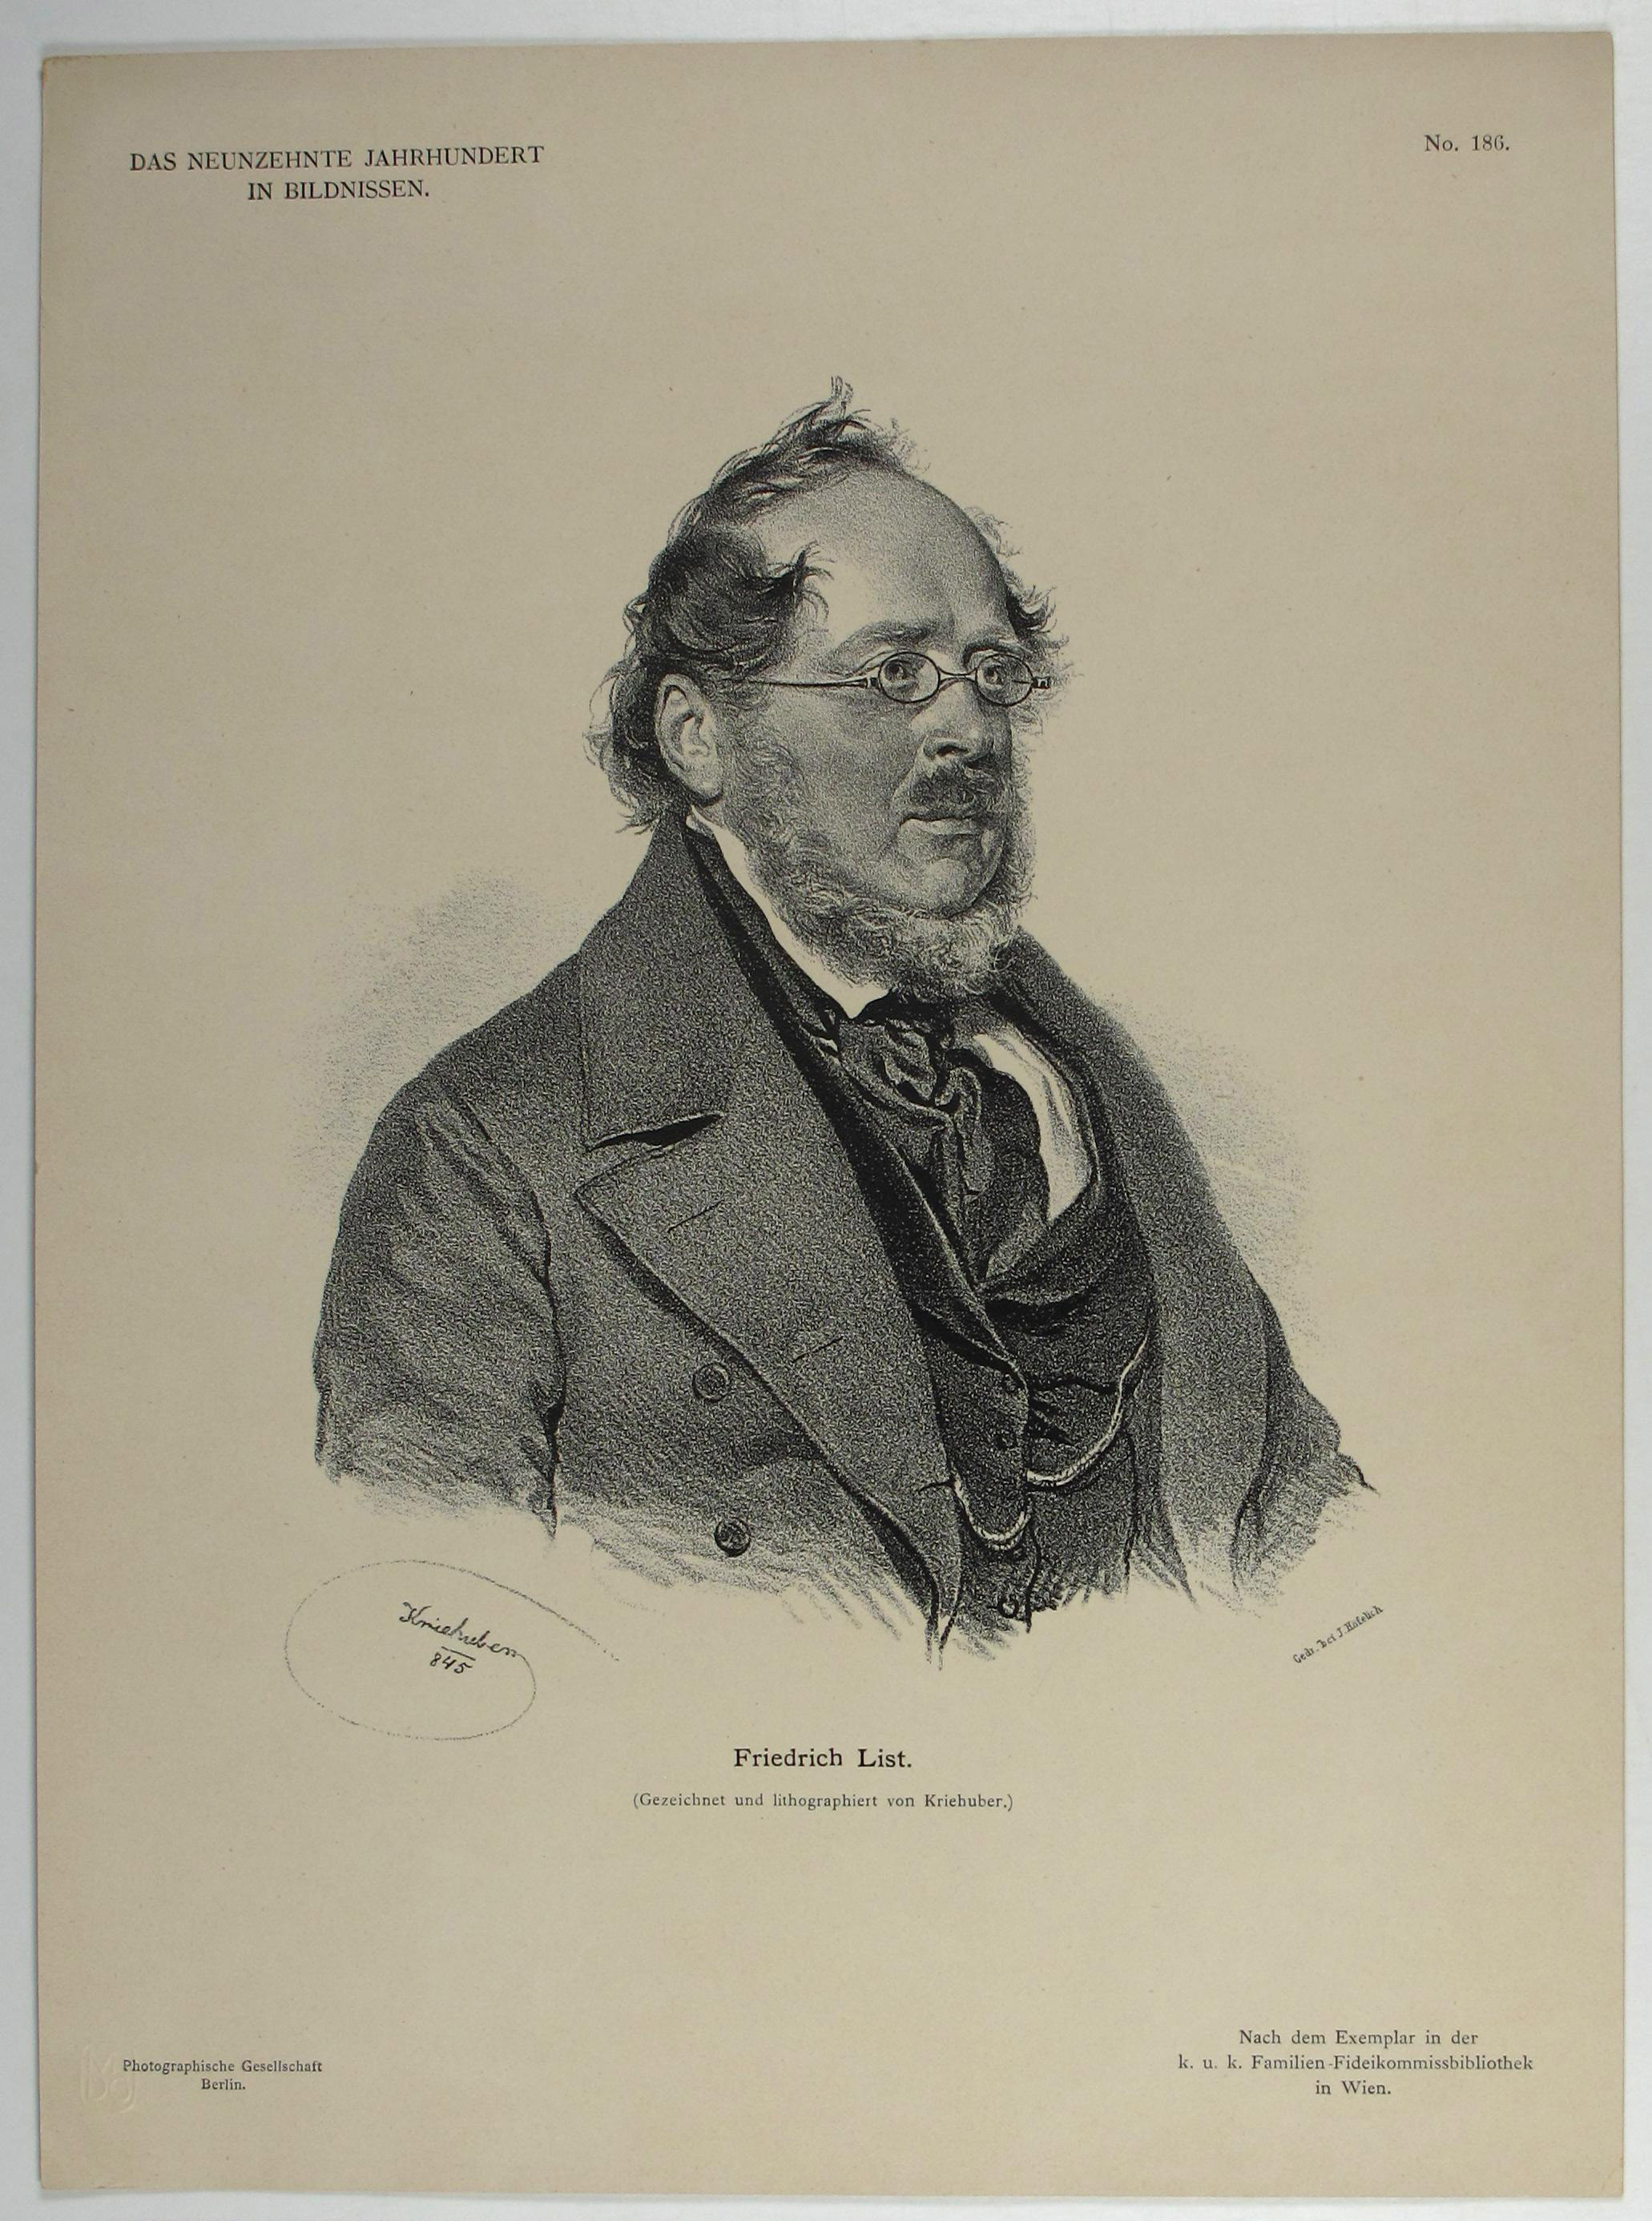 Grafik: Porträt des Friedrich List. Wirtschaftstheoretiker des 19. Jahrhunderts sowie Unternehmer, Diplomat und Eisenbahn-Pionier